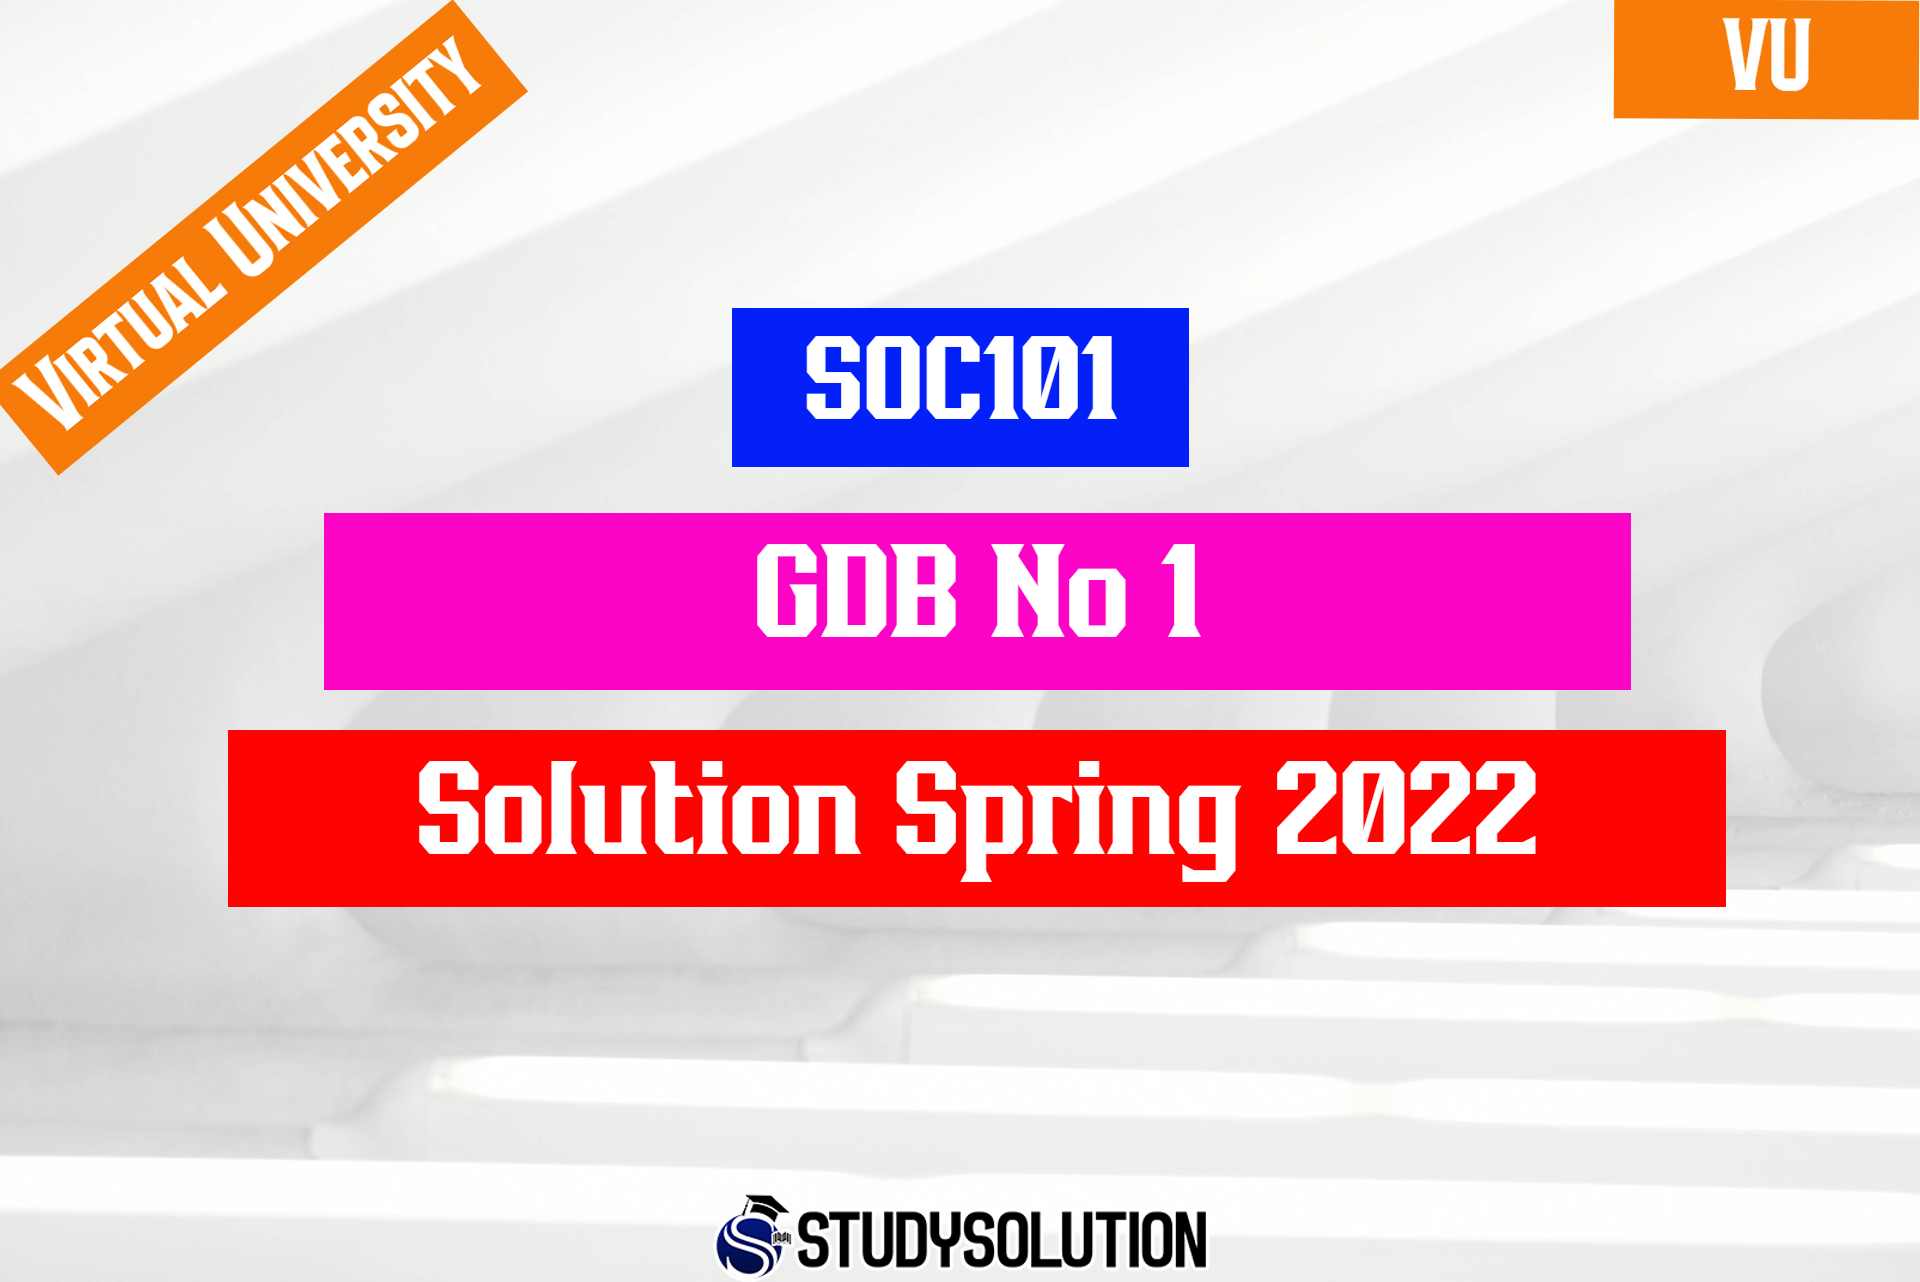 SOC101 GDB No 1 Solution Spring 2022